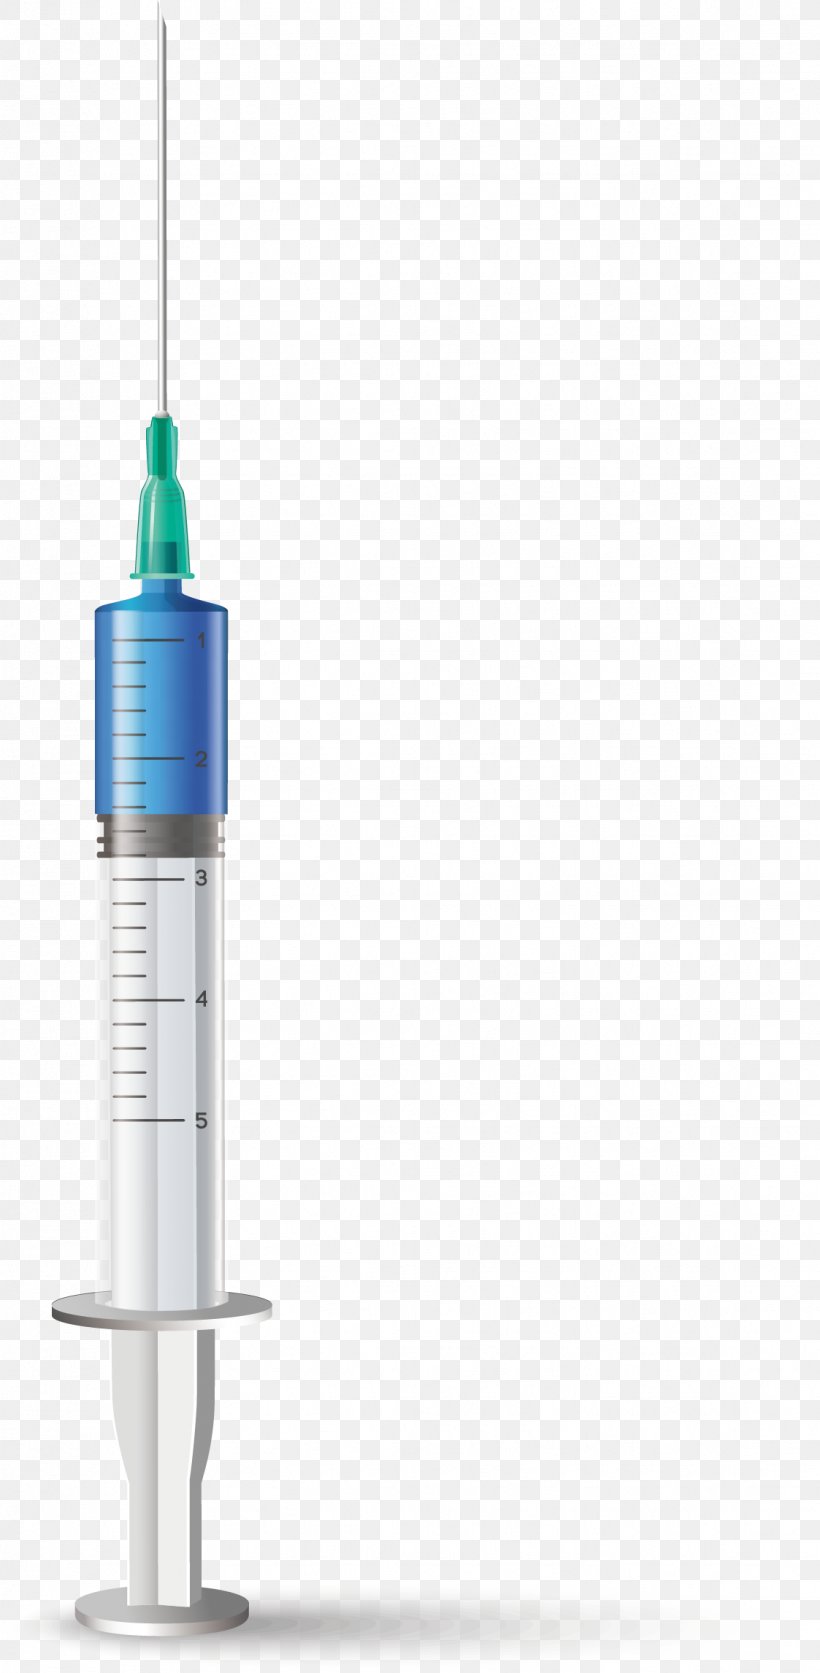 Syringe Needle Gauge Size Chart